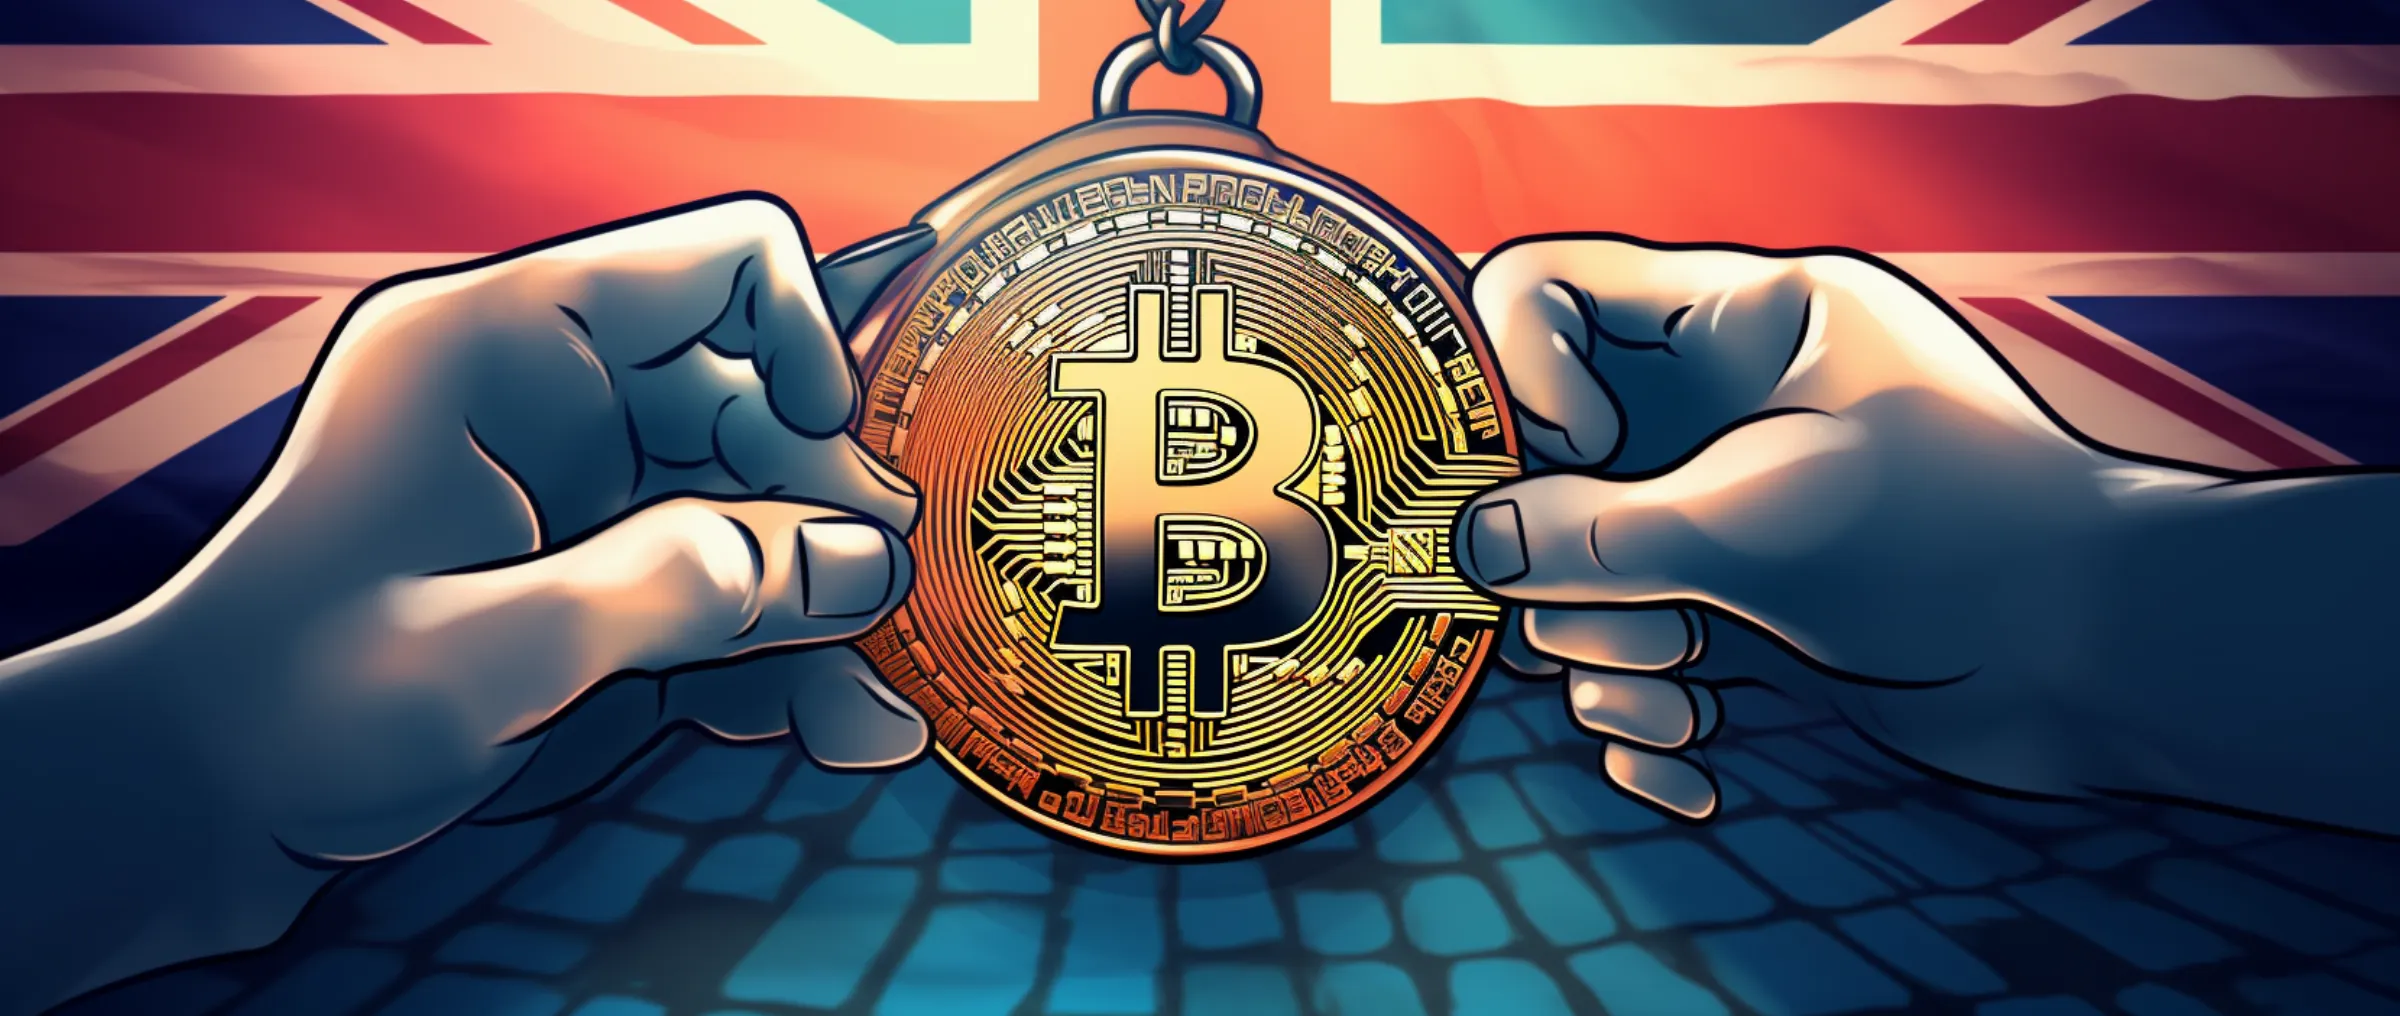 Gemini adapts to UK's crypto regulations